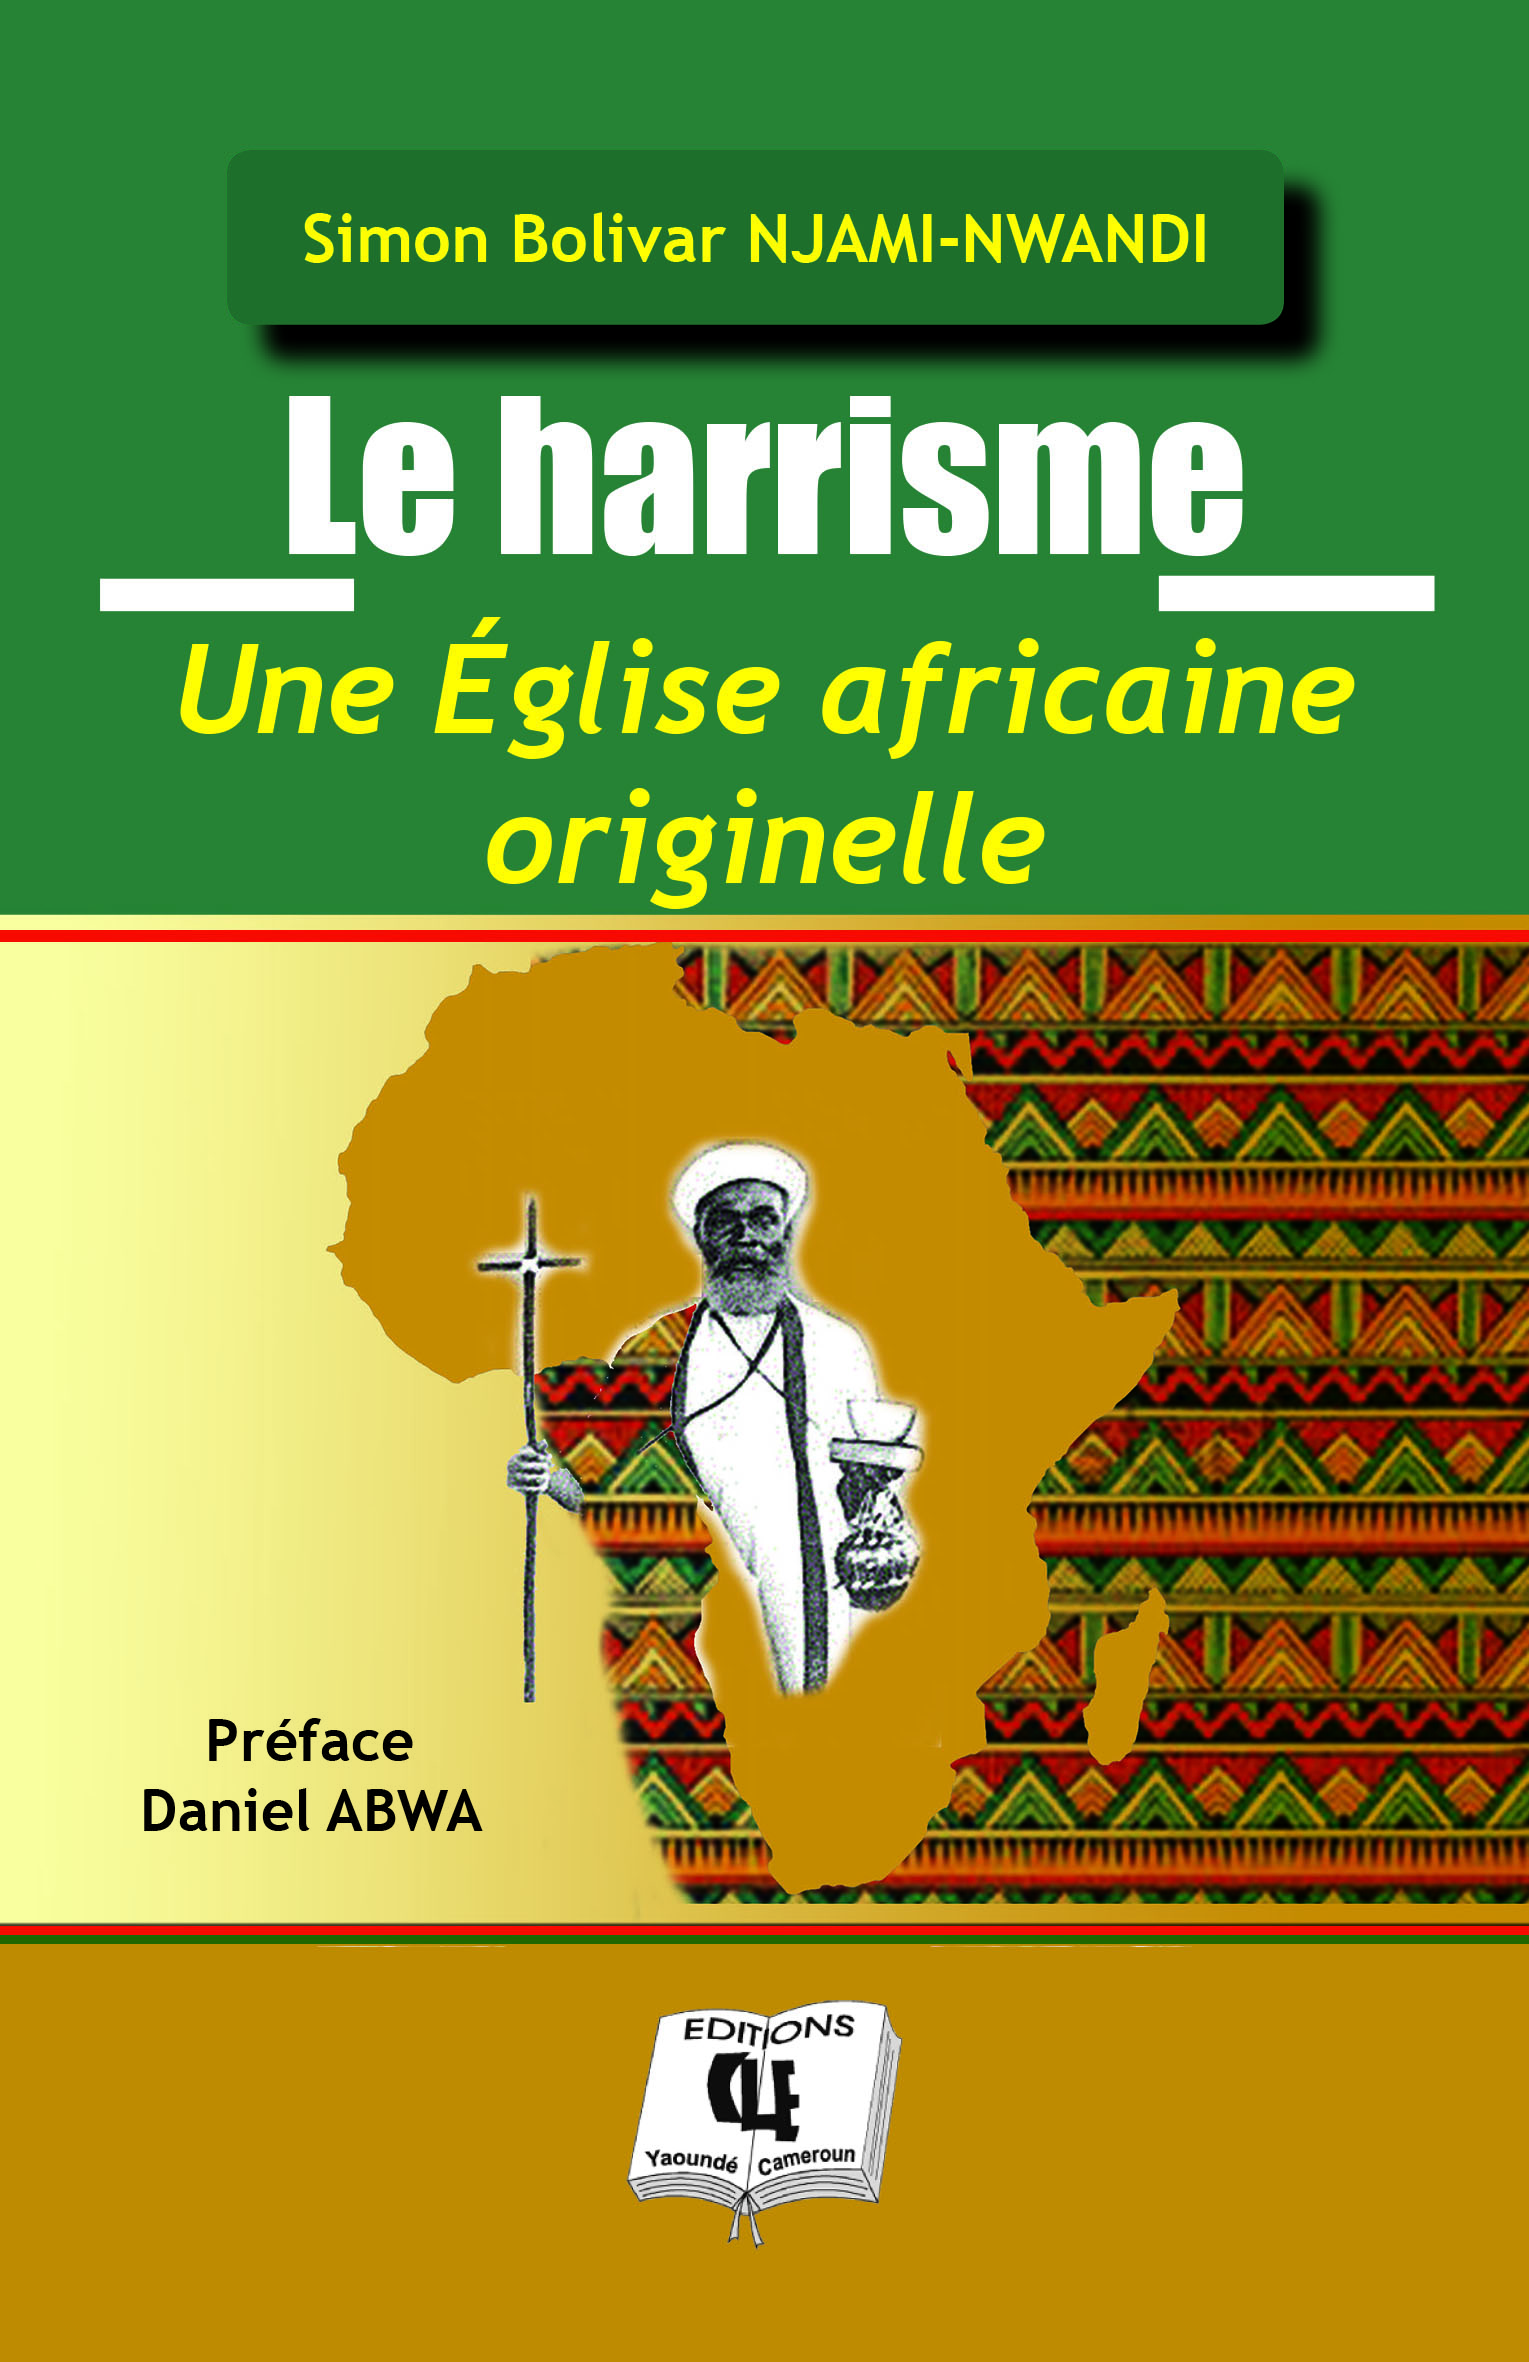 Le harrisme Une Église africaine originelle